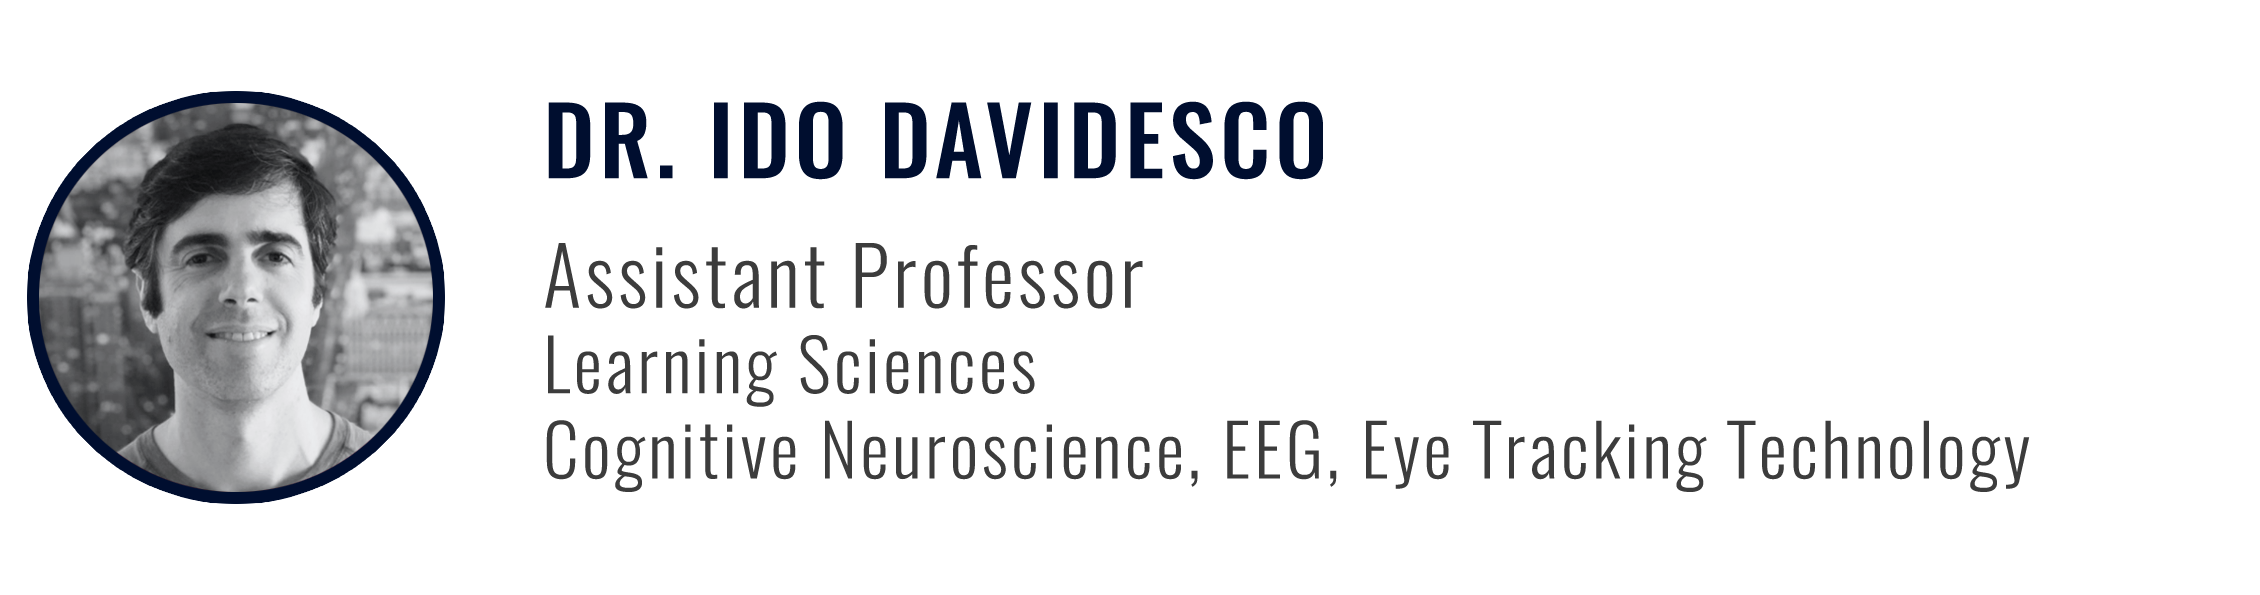 Dr. Ido Davidesco